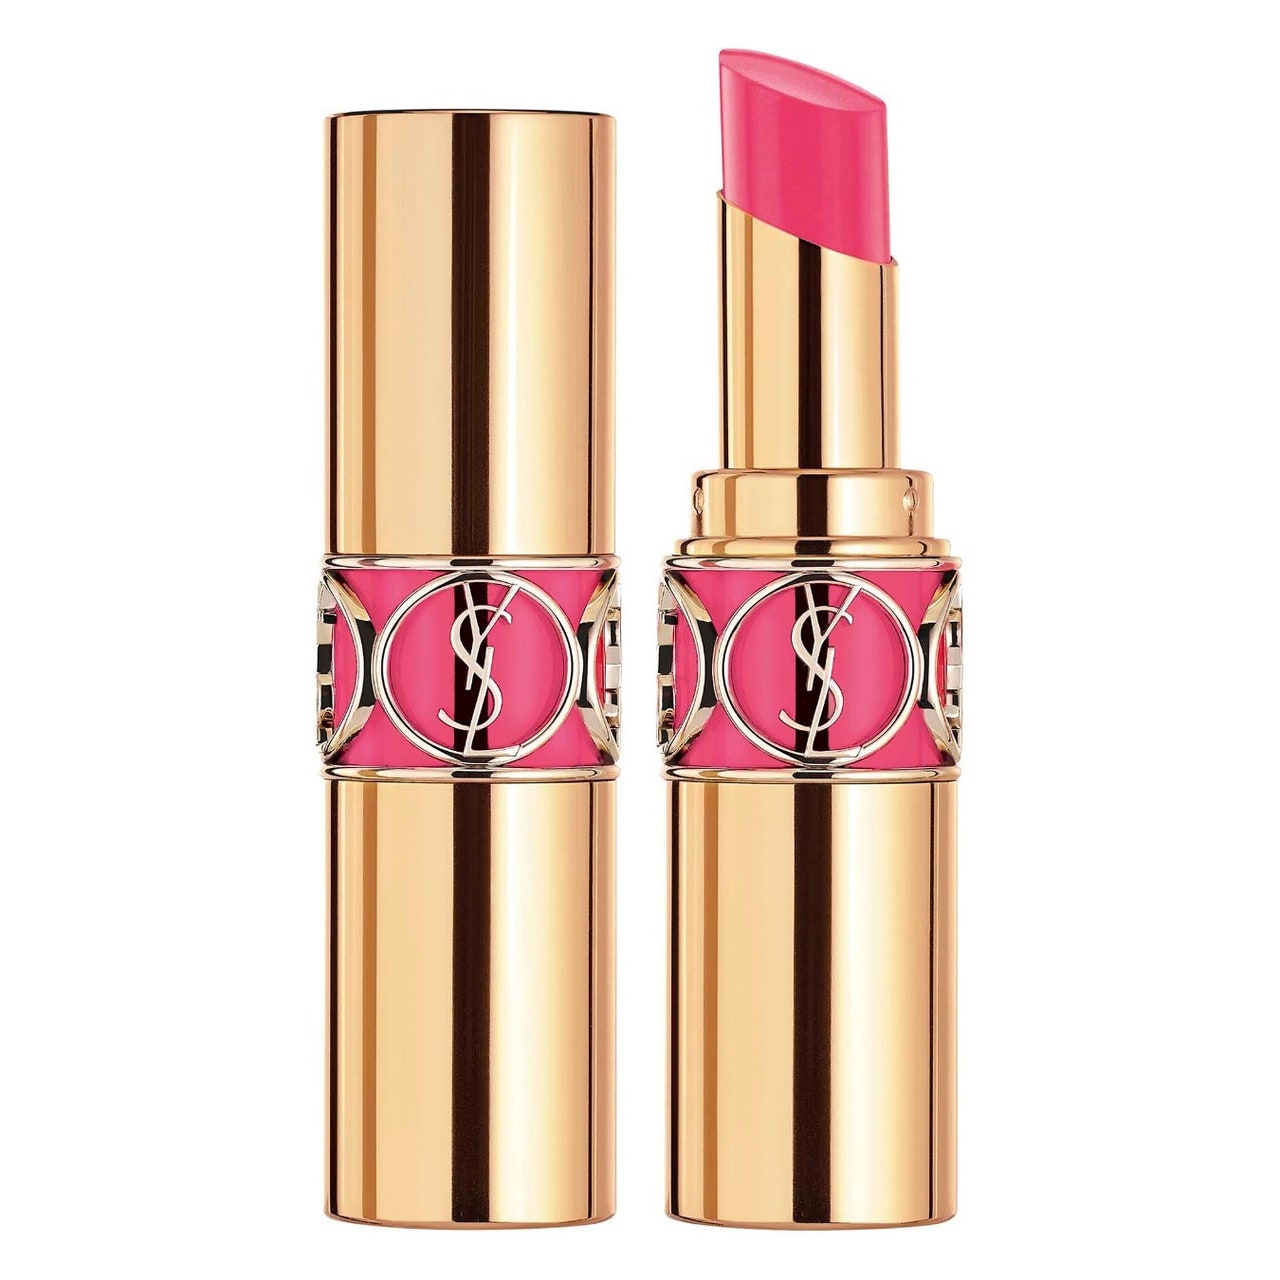 YSL Beauty Rouge Volupté Shine Lippenstiftbalsam in einer atemberaubenden roségoldenen Tube mit leuchtend rosa Lippenstiftbalsam auf weißem Hintergrund